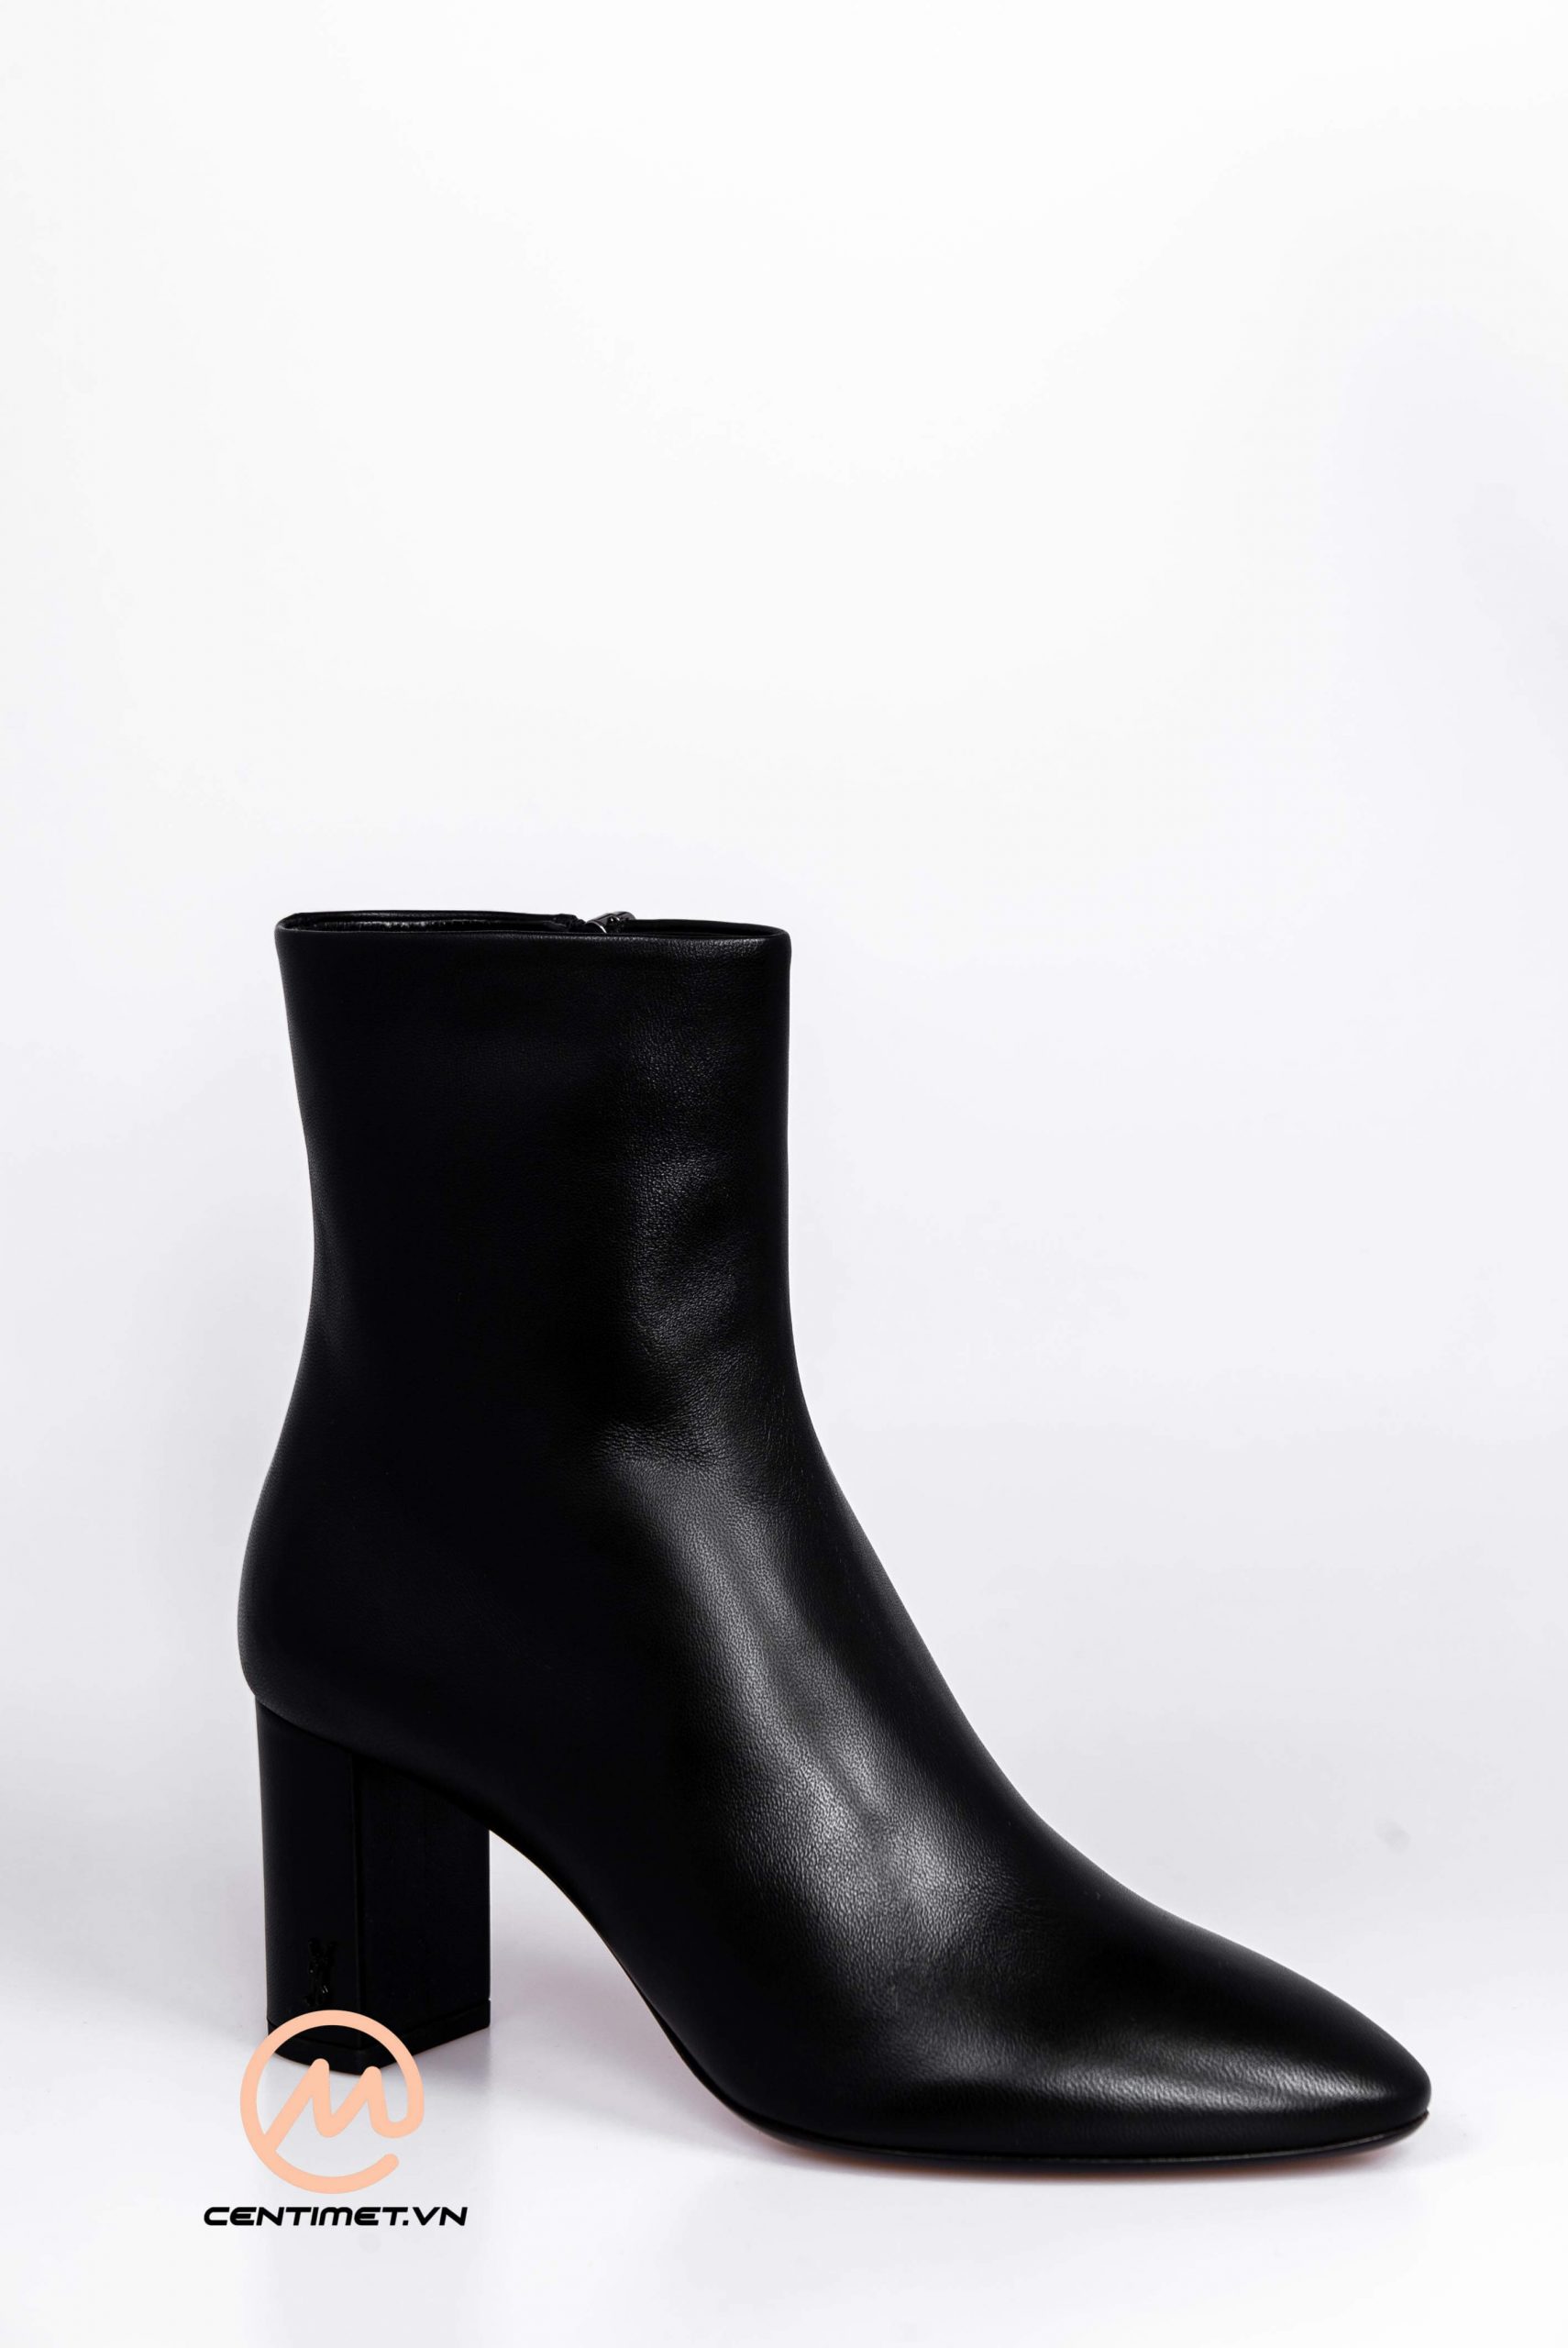 Giày Saint Laurent Lou ankle boots 5205 x-03917